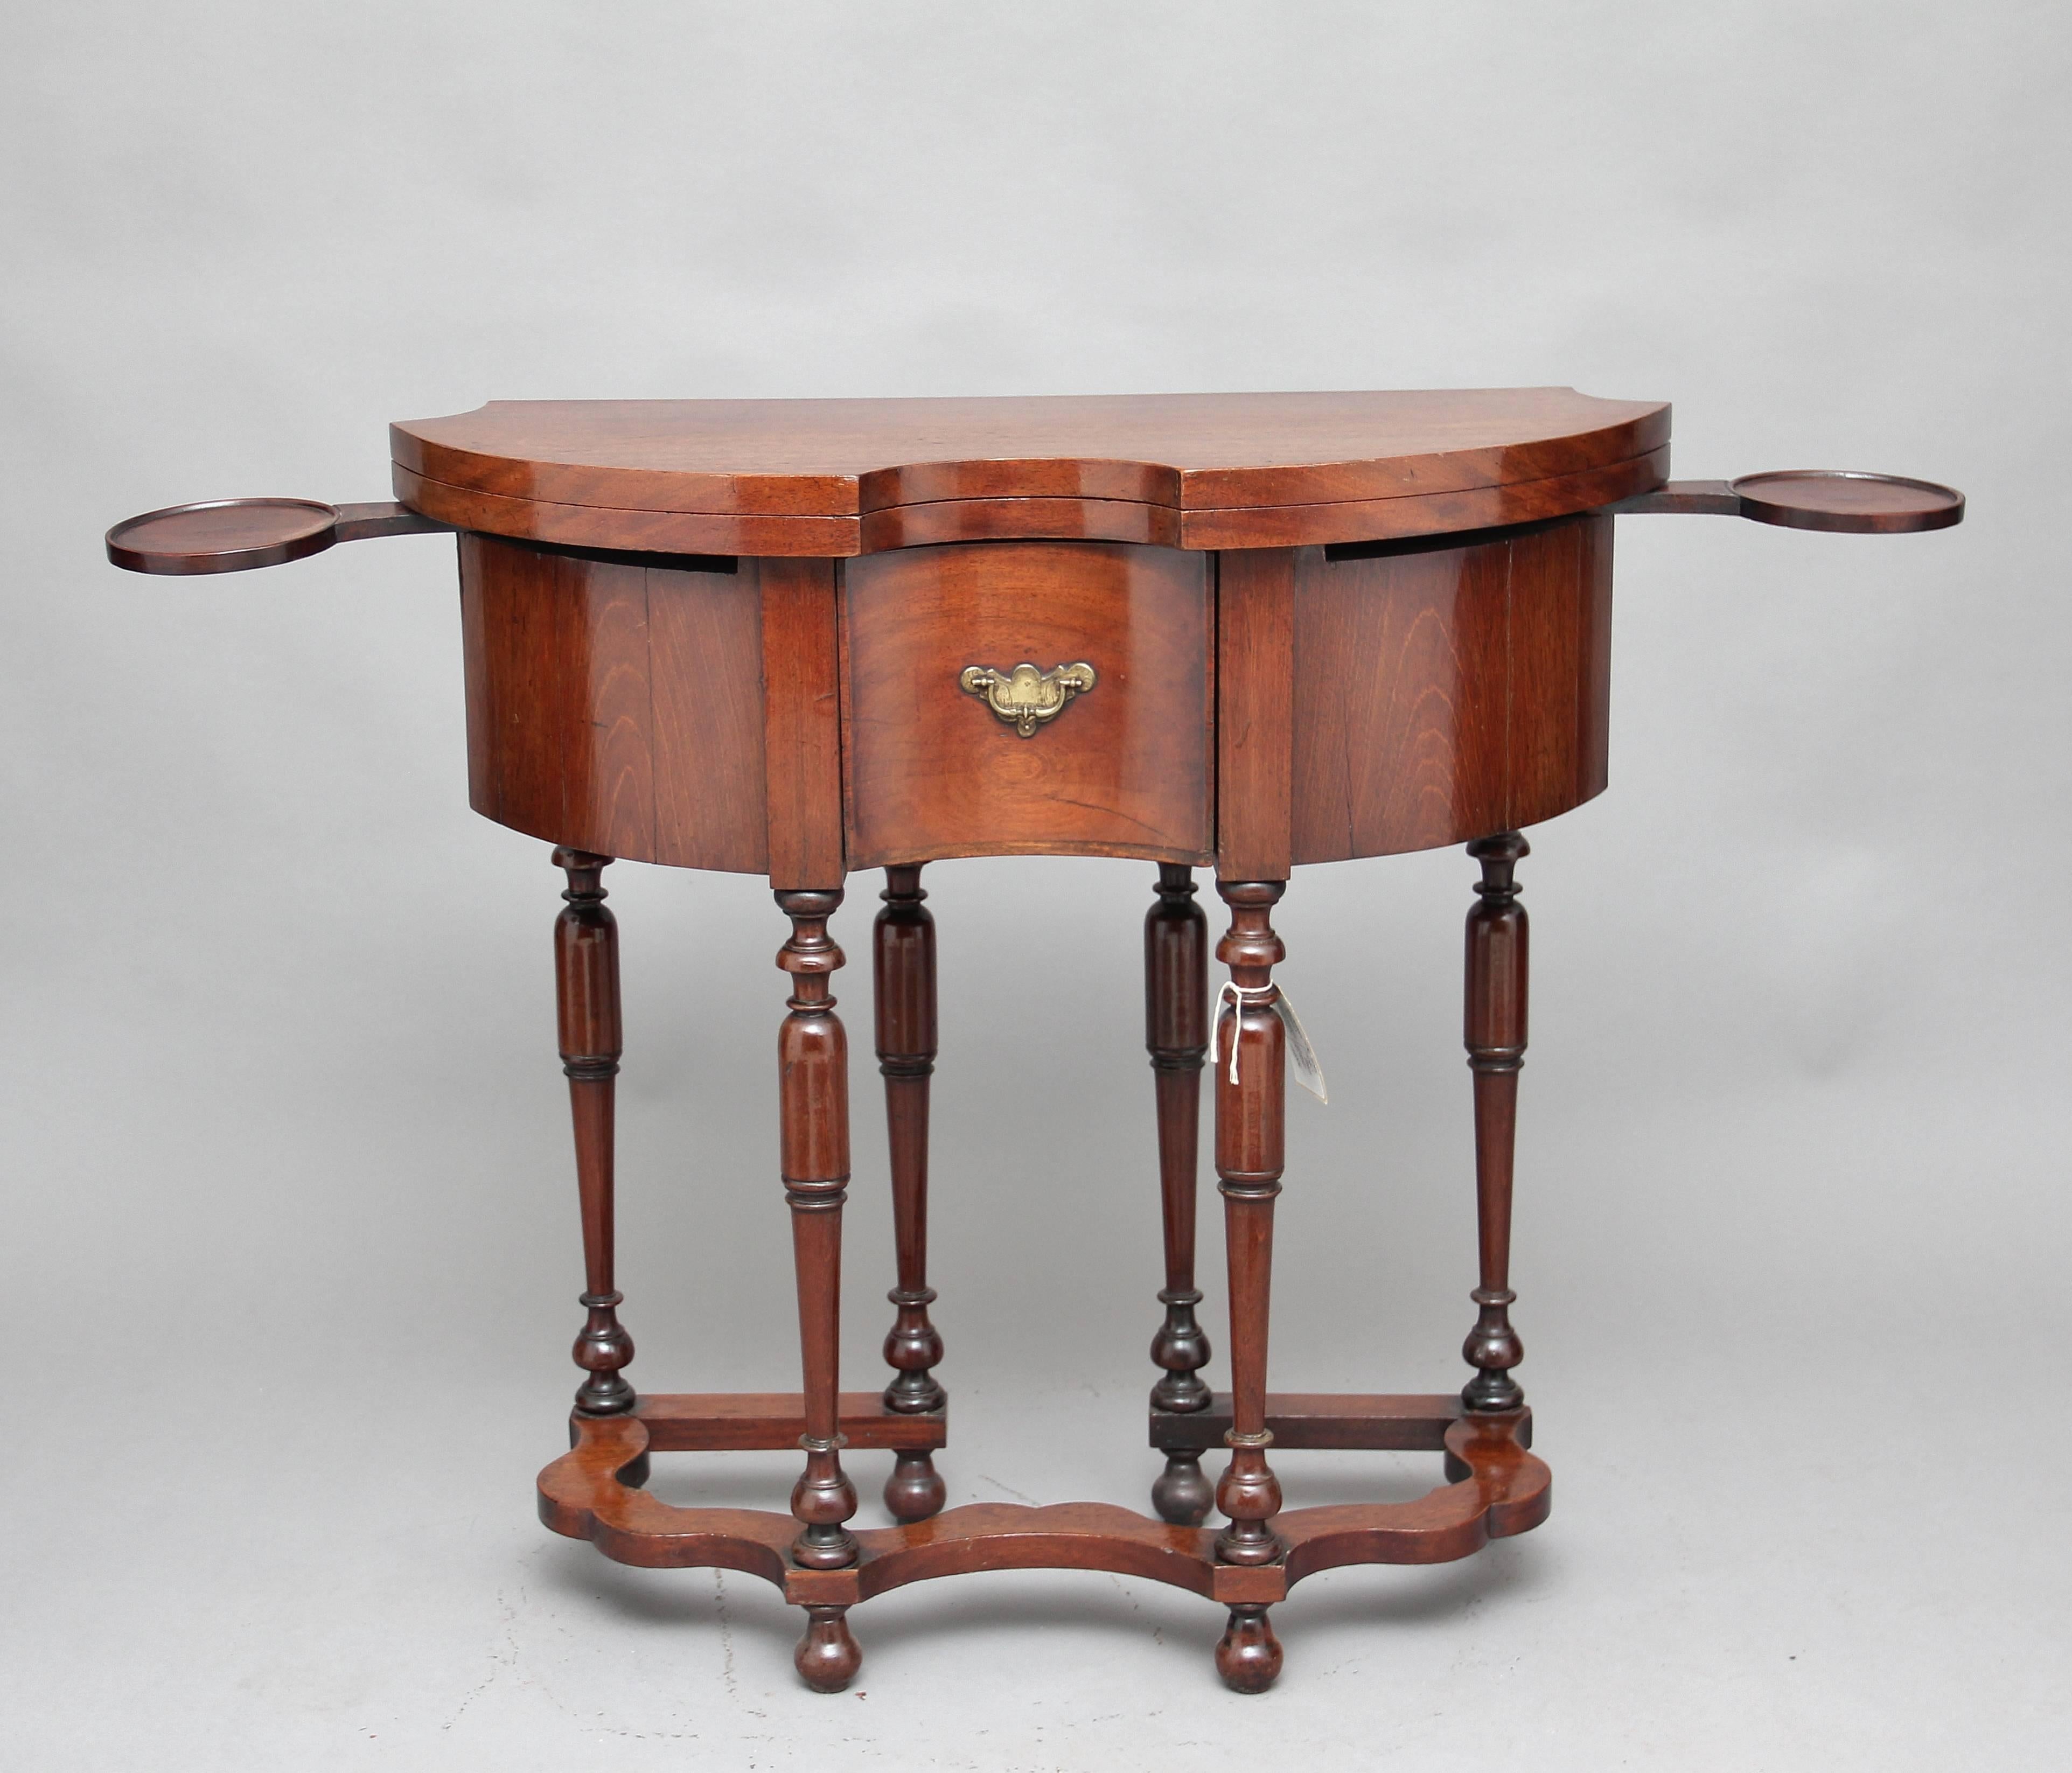 Ein sehr seltener Teakholz-Spieltisch aus der Mitte des 18. Jahrhunderts, mit einer geformten, aufklappbaren Platte über einer tiefen, geformten Schürze und einer einzelnen, mit Eichenholz ausgekleideten Schublade in der Mitte mit originalem